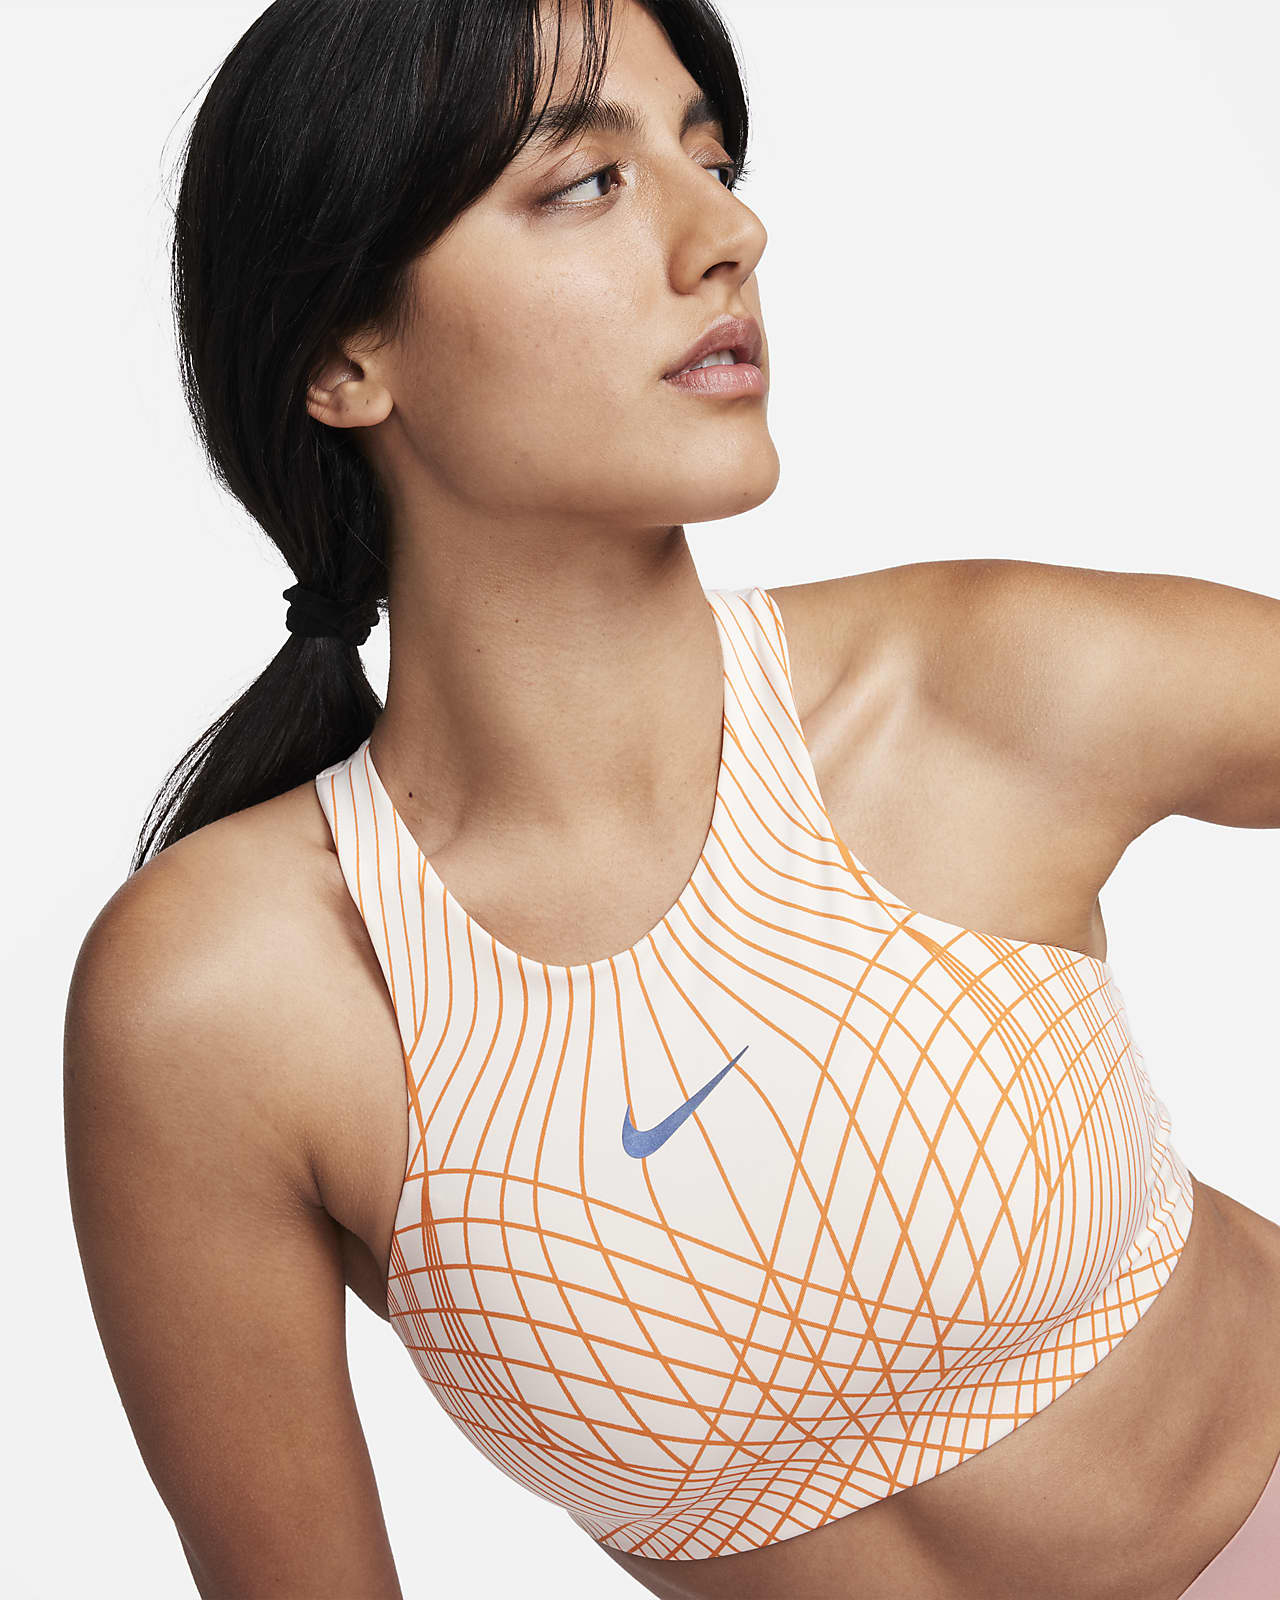 Dámská sportovní podprsenka Nike Swoosh s vysokým límcem a vycpávkami se střední oporou